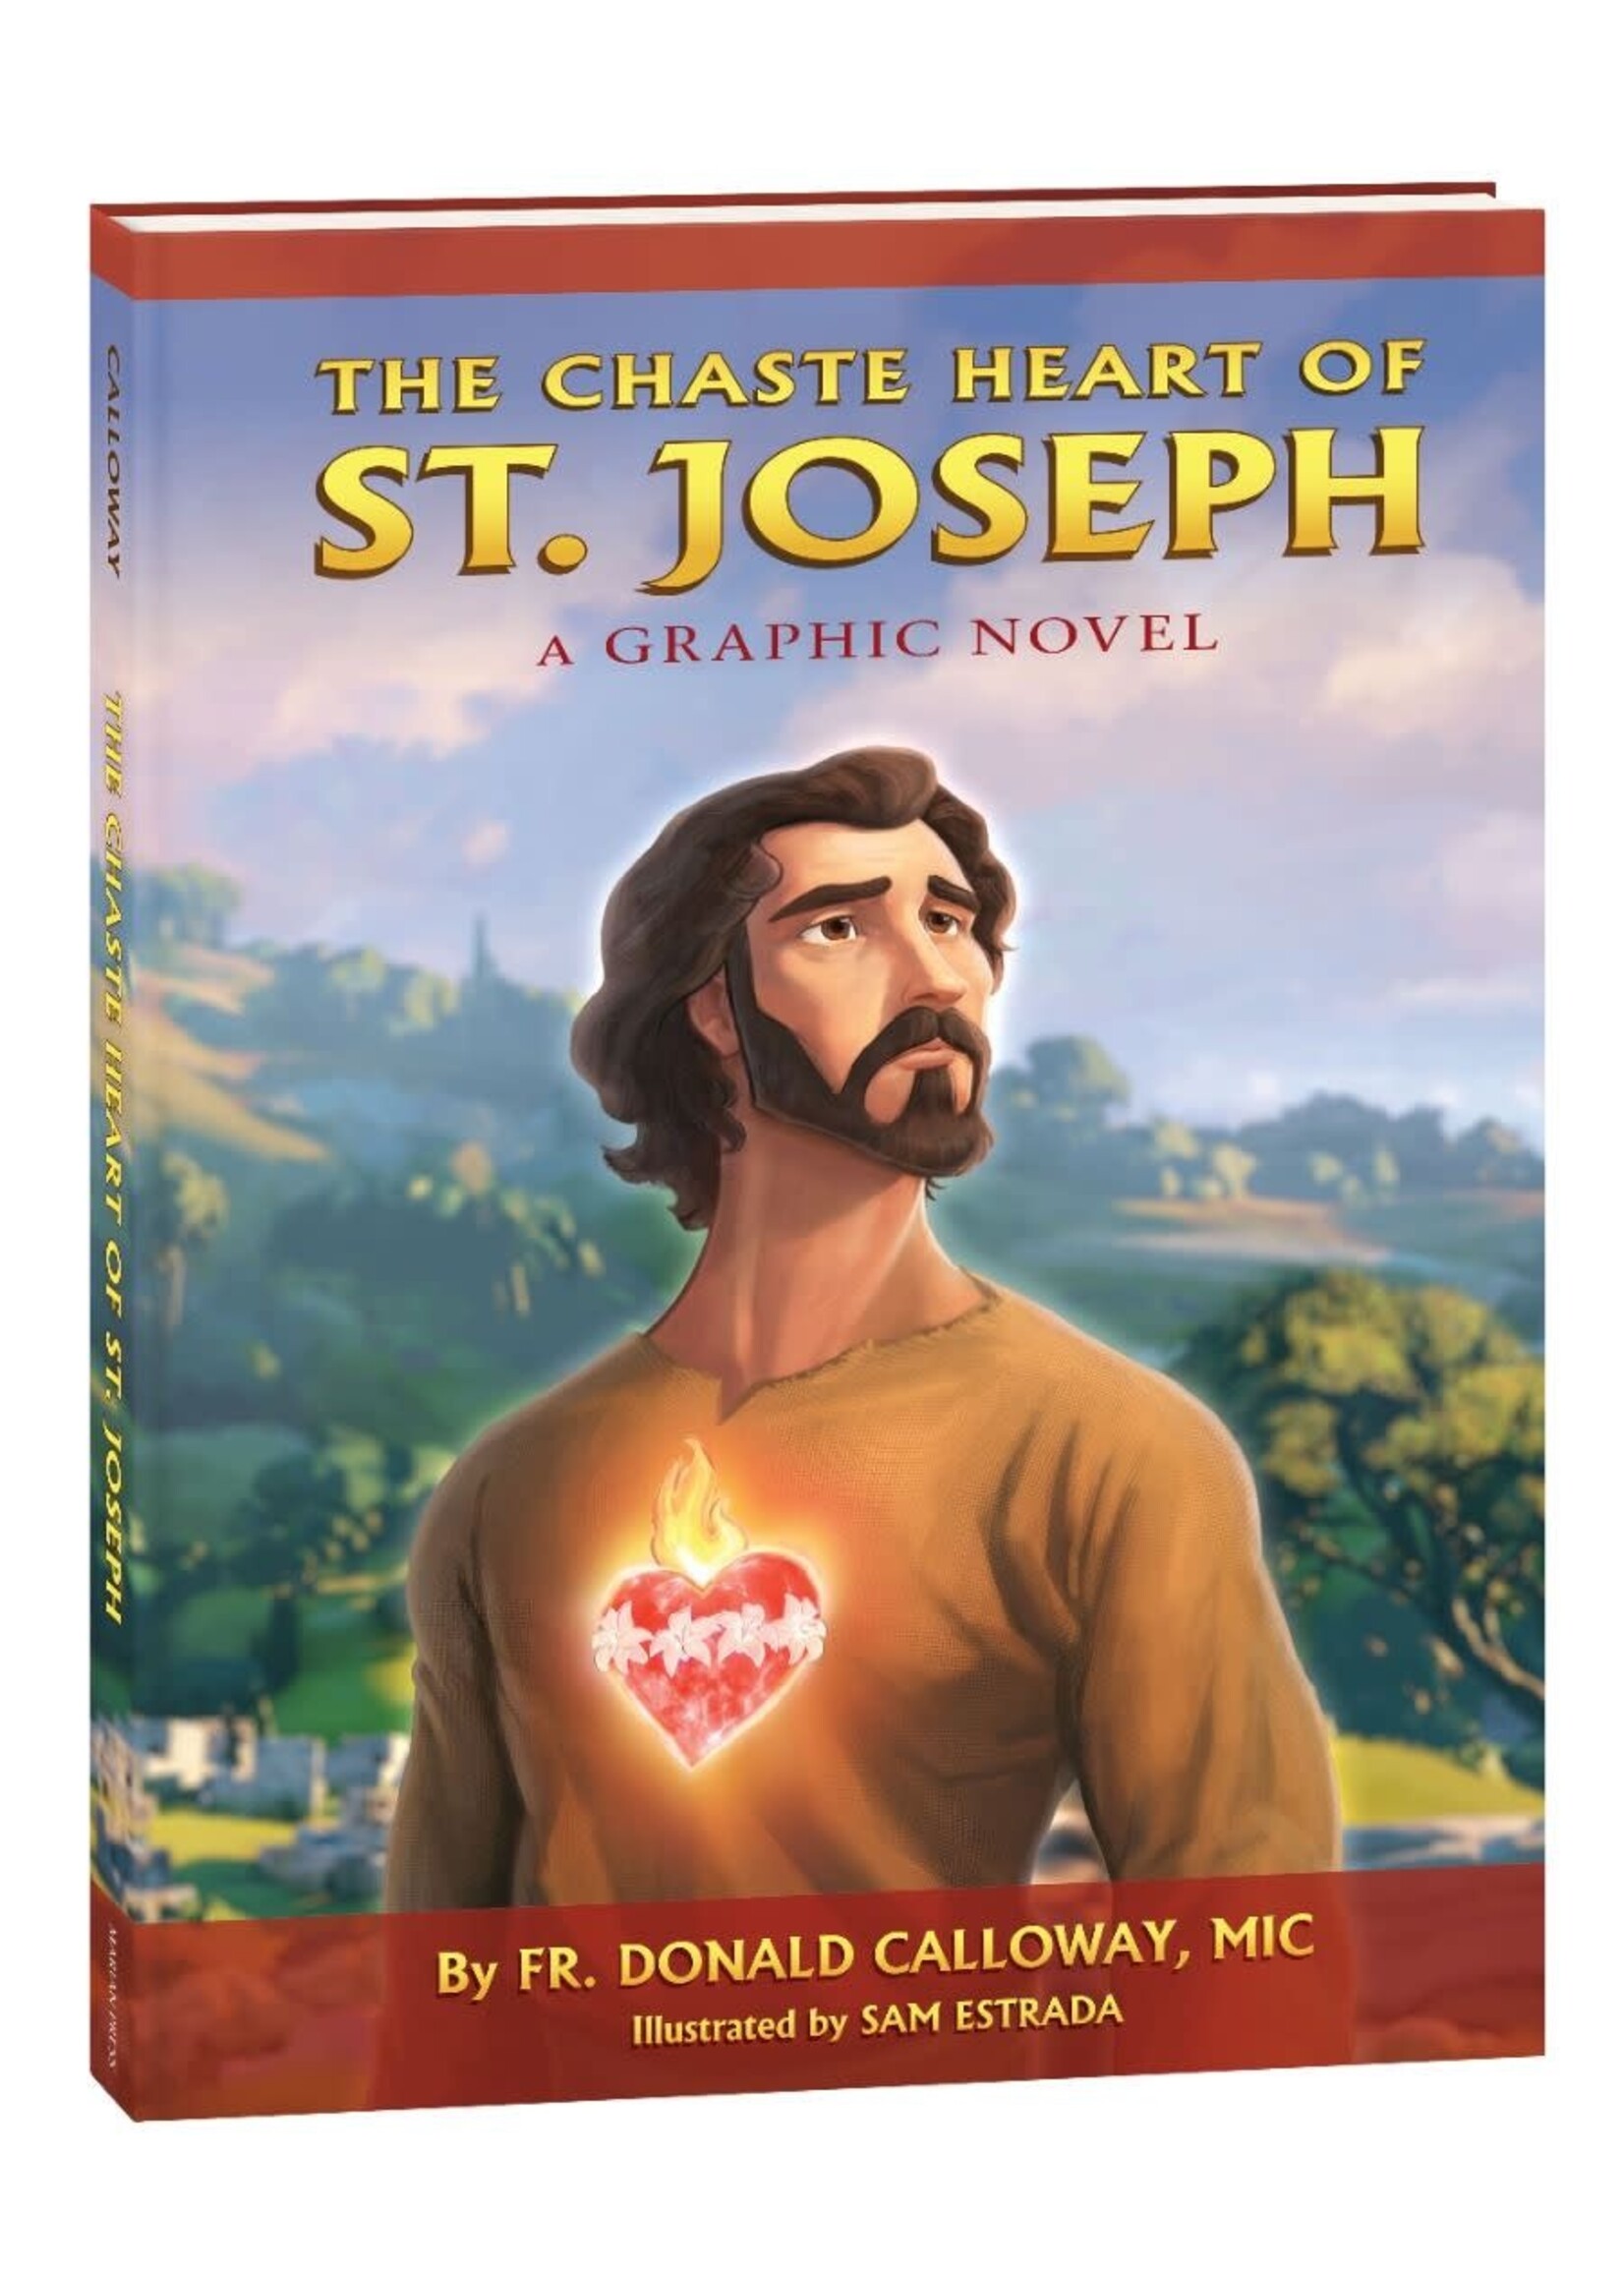 The Chaste Heart of St Joseph